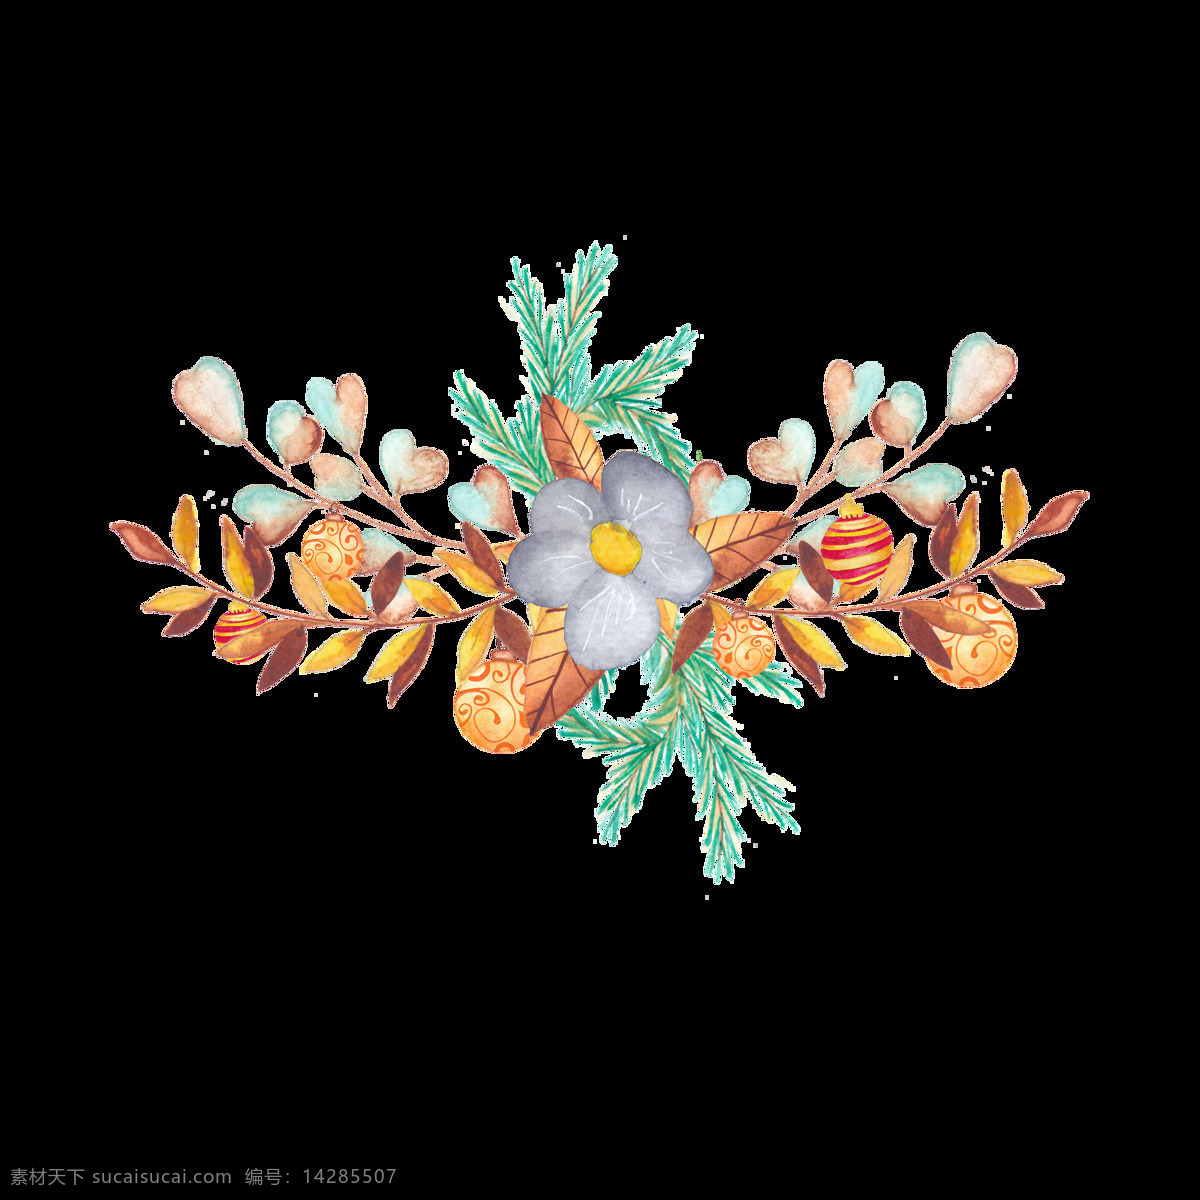 秋日 植物 树叶 透明 卡通 抠图专用 装饰 设计素材